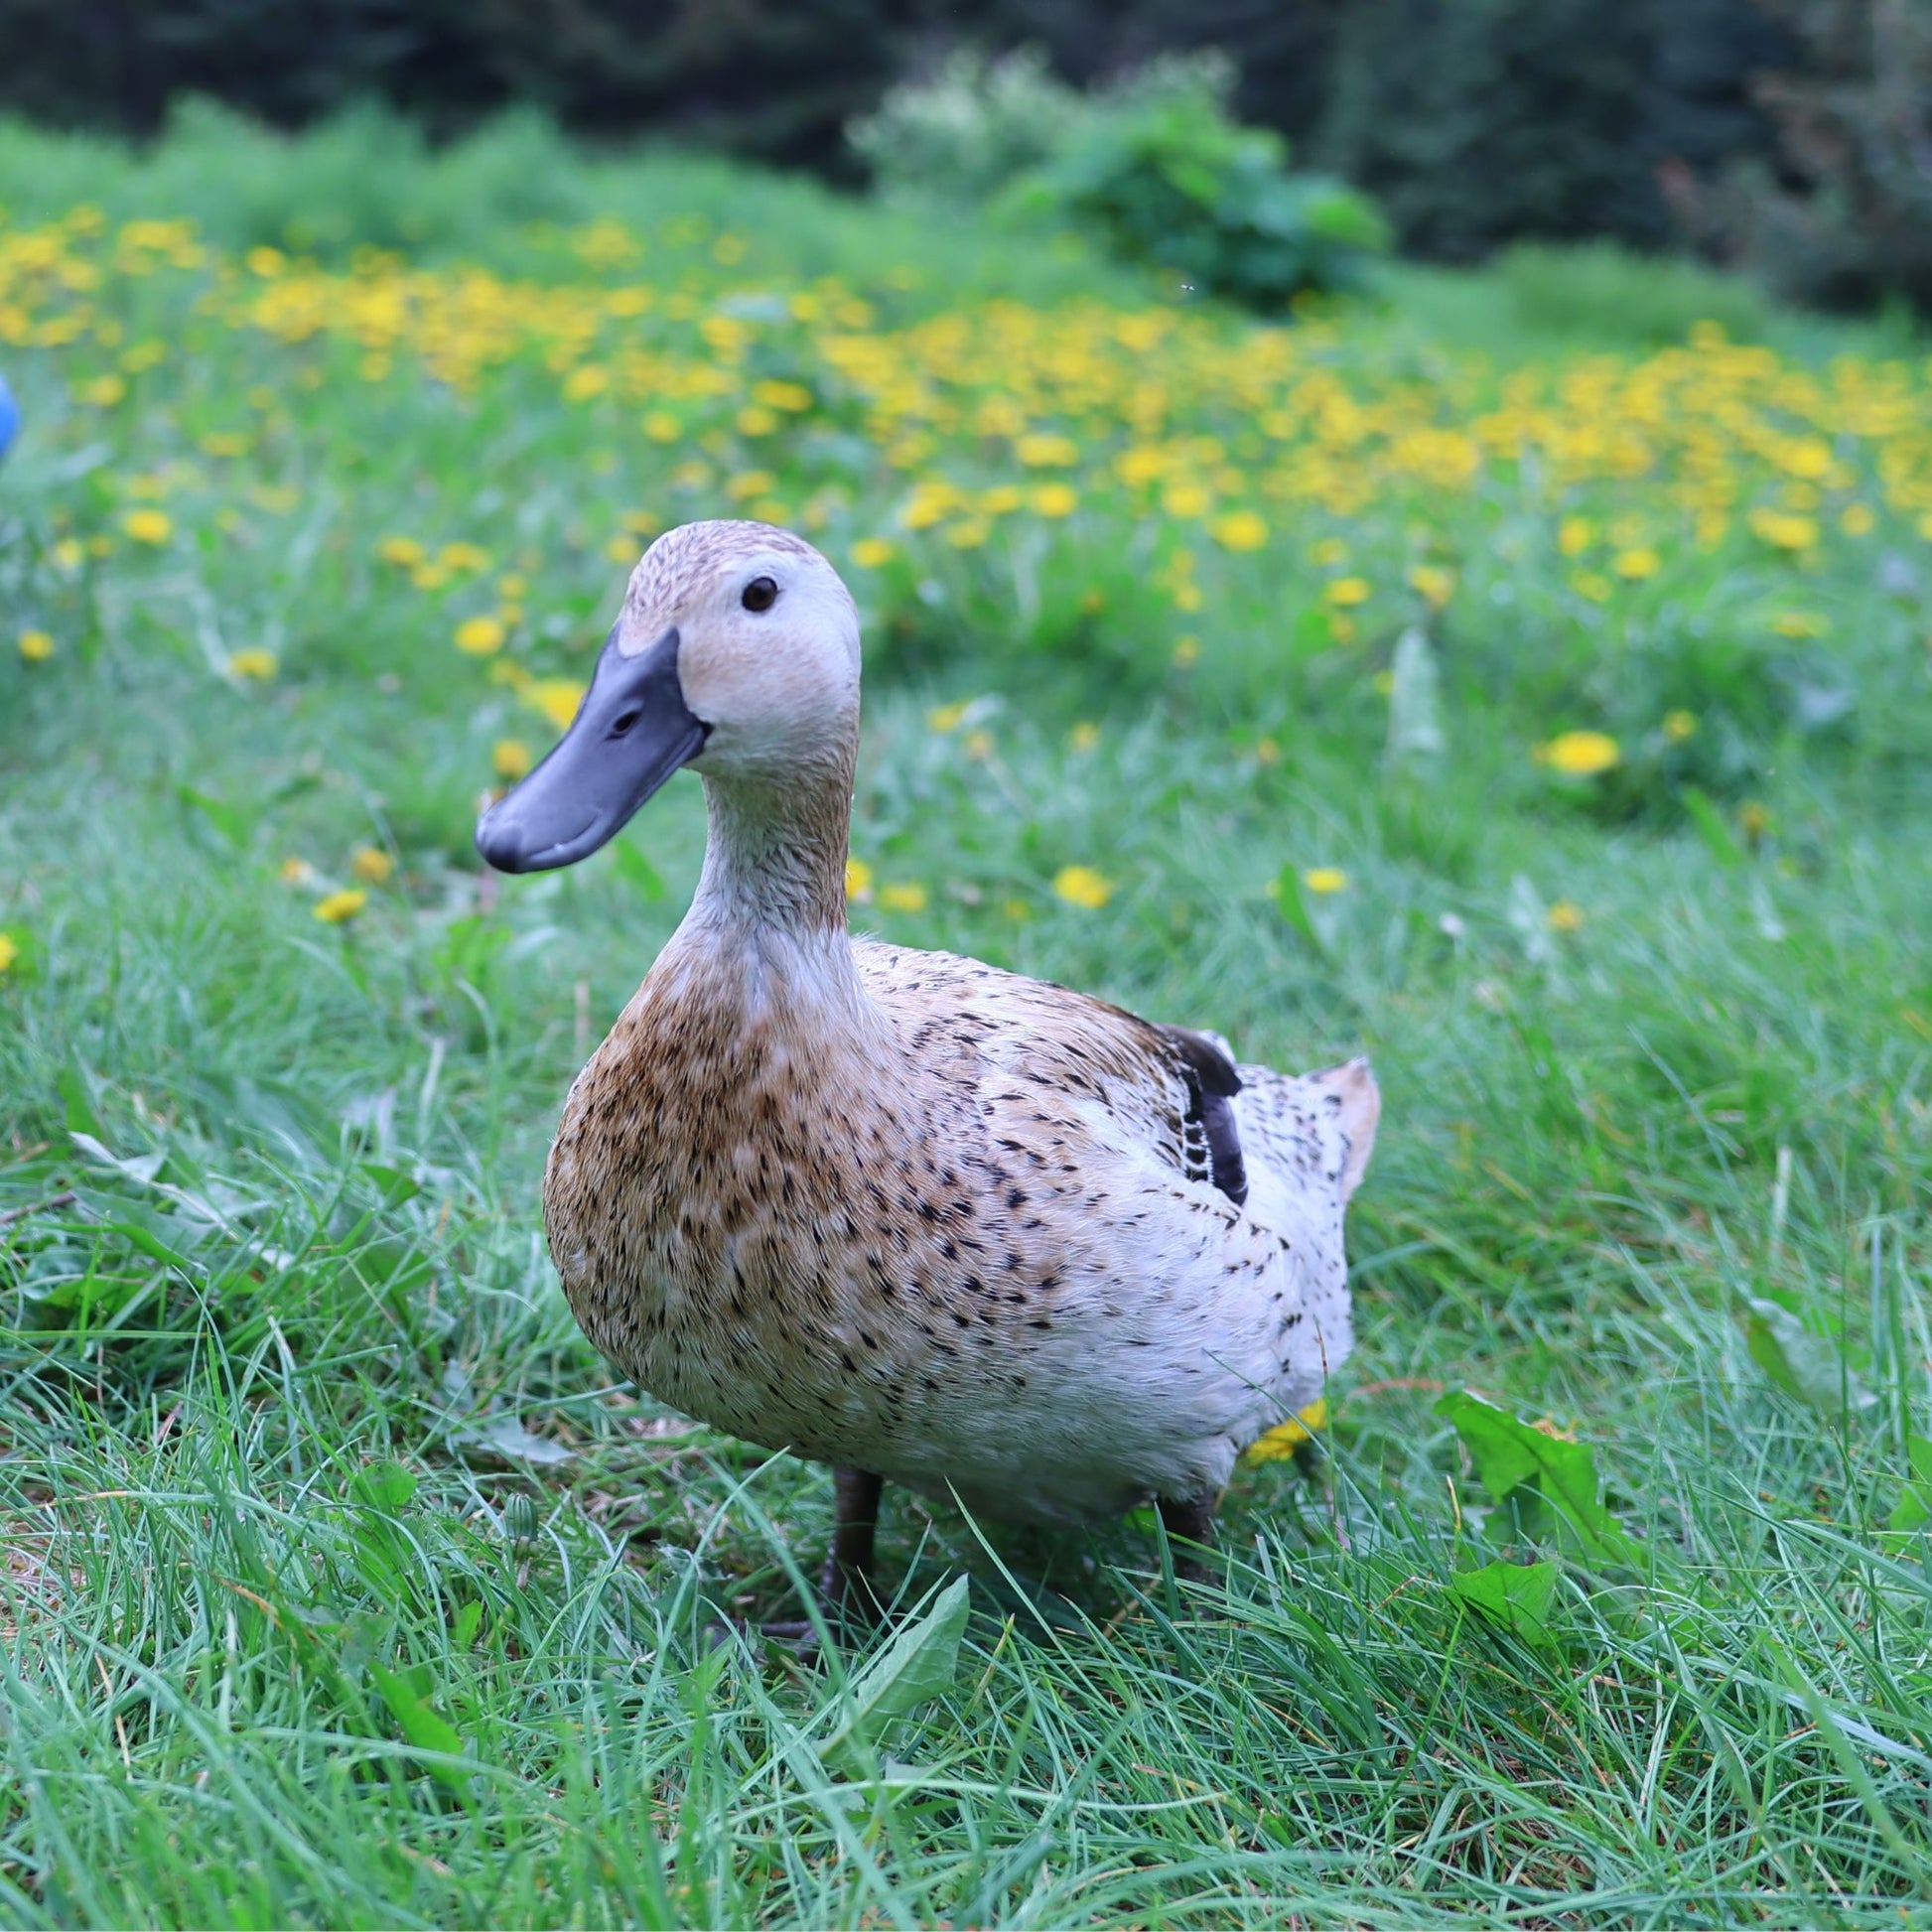 Welsh Harlequin female duck. 